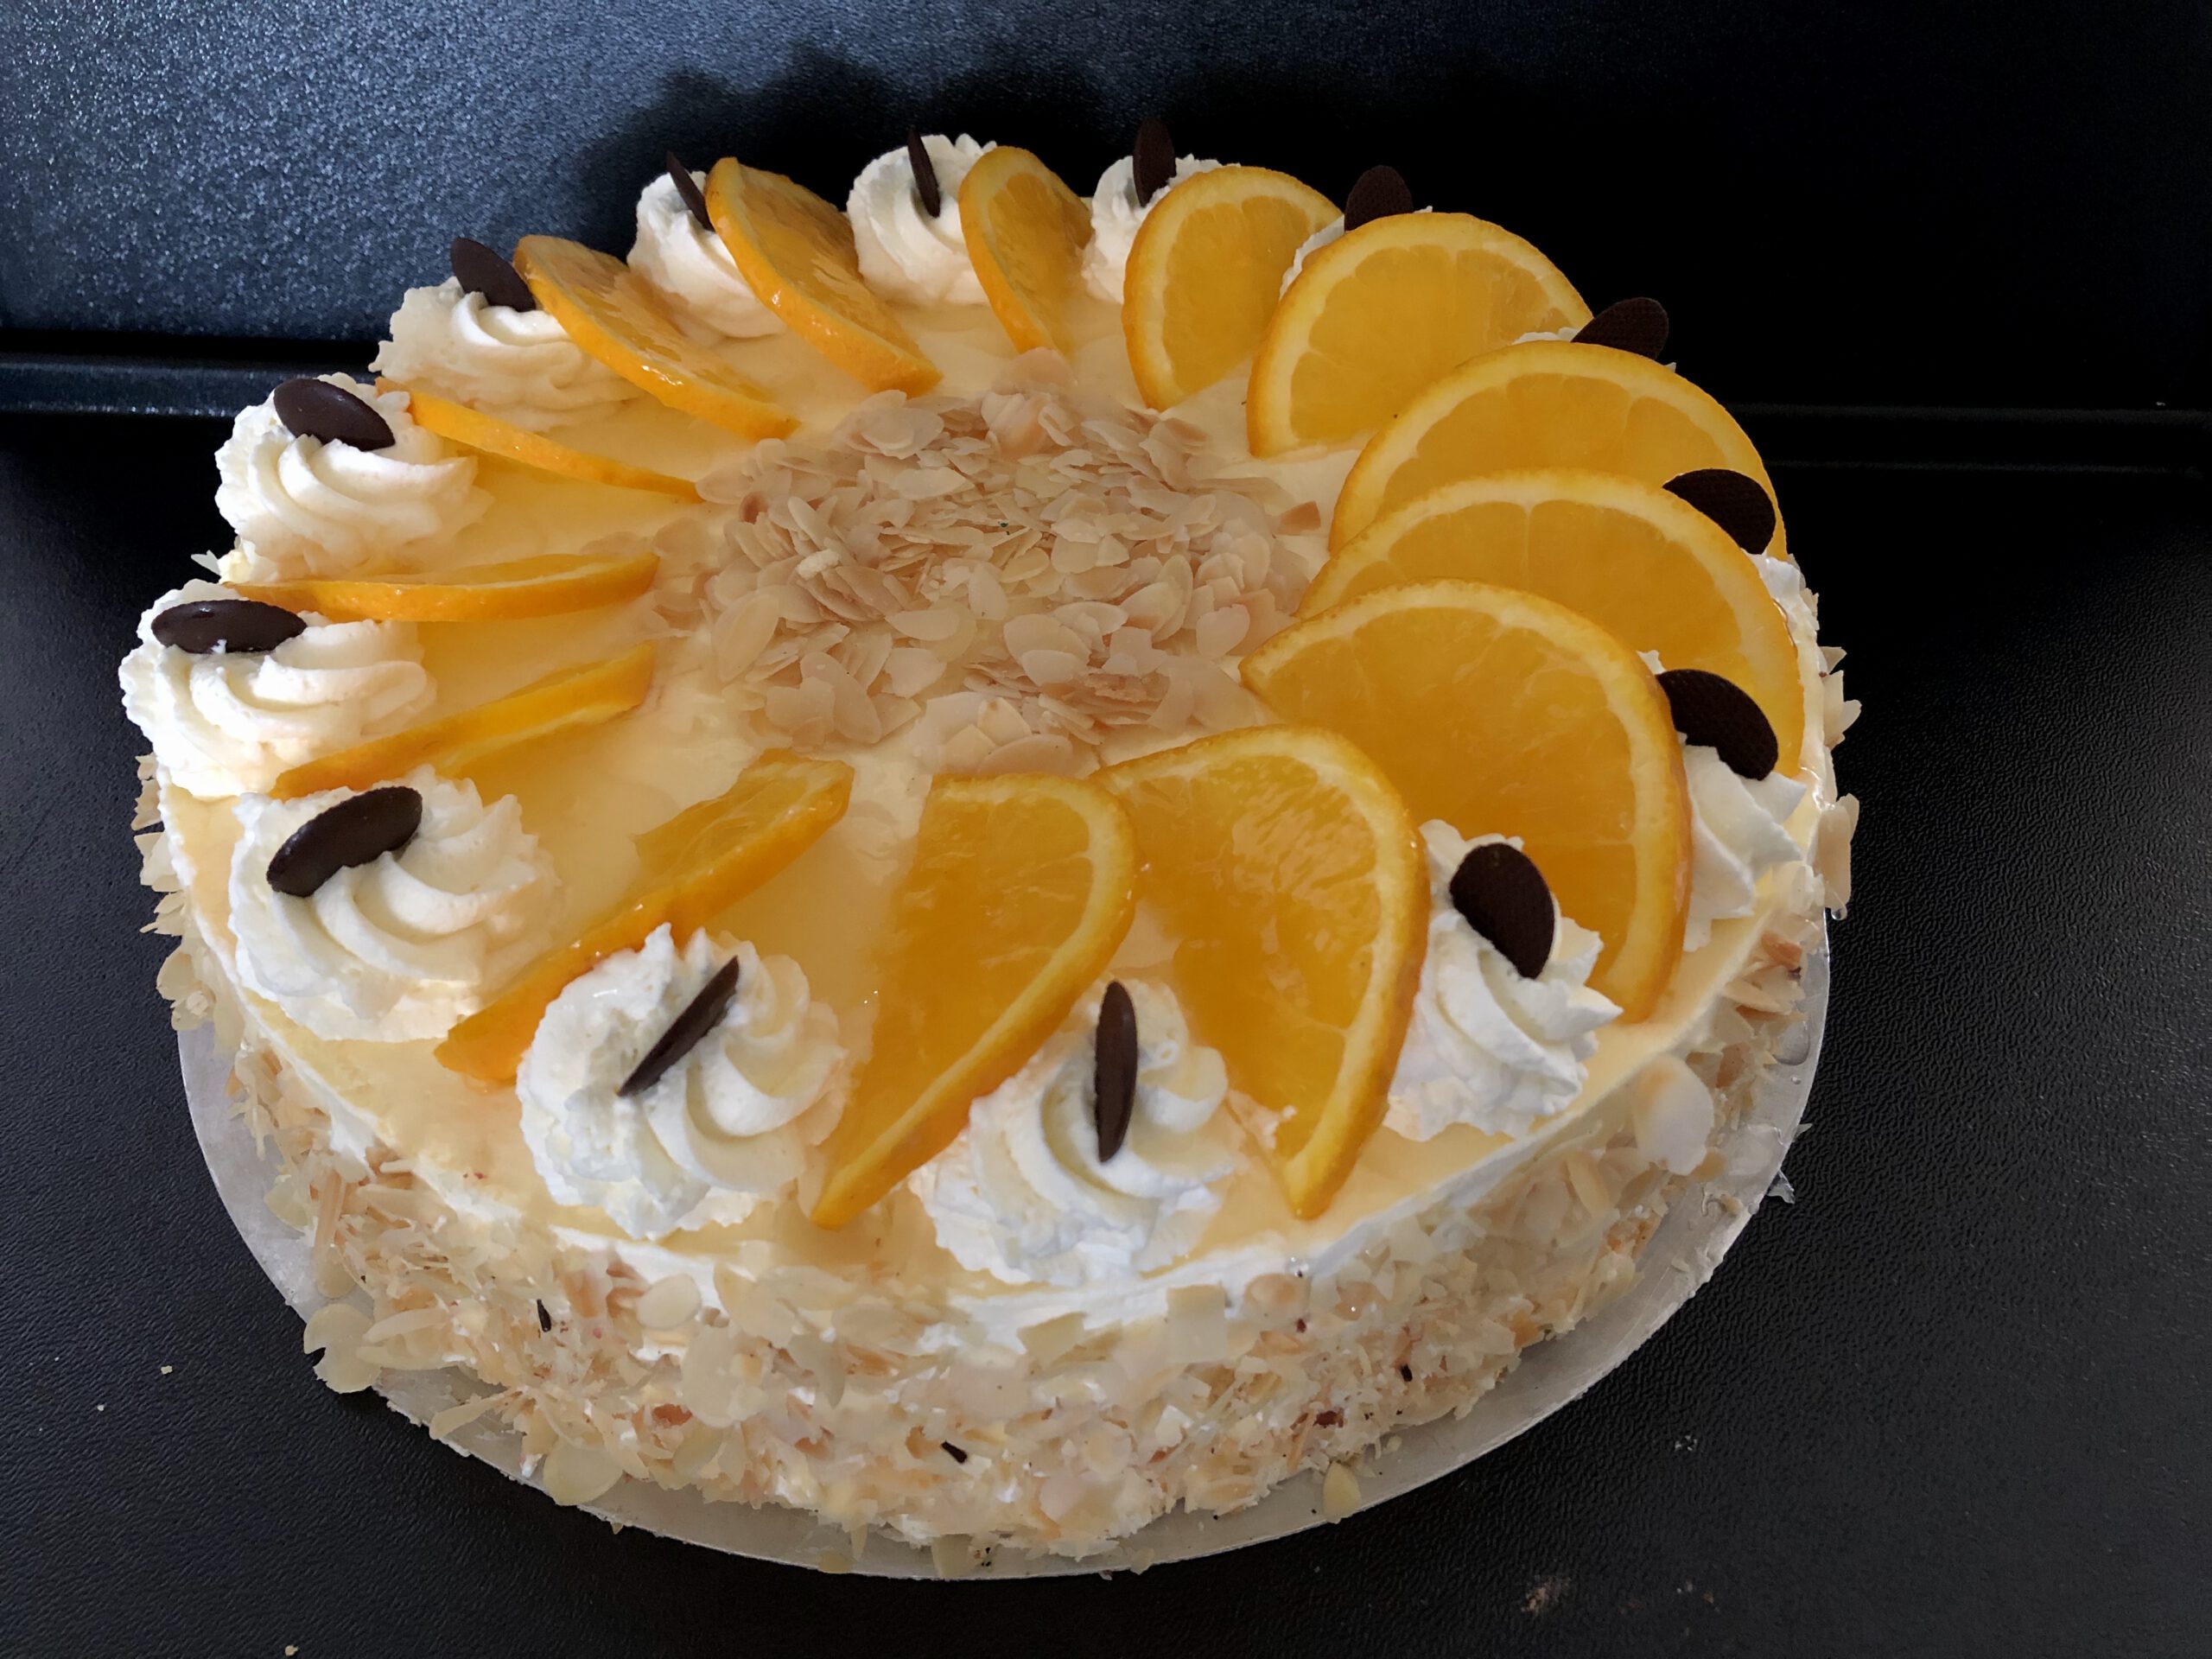 Orangen-Sahne-Torte, Portionsstück - Stadtbäckerei Strate in Lemgo